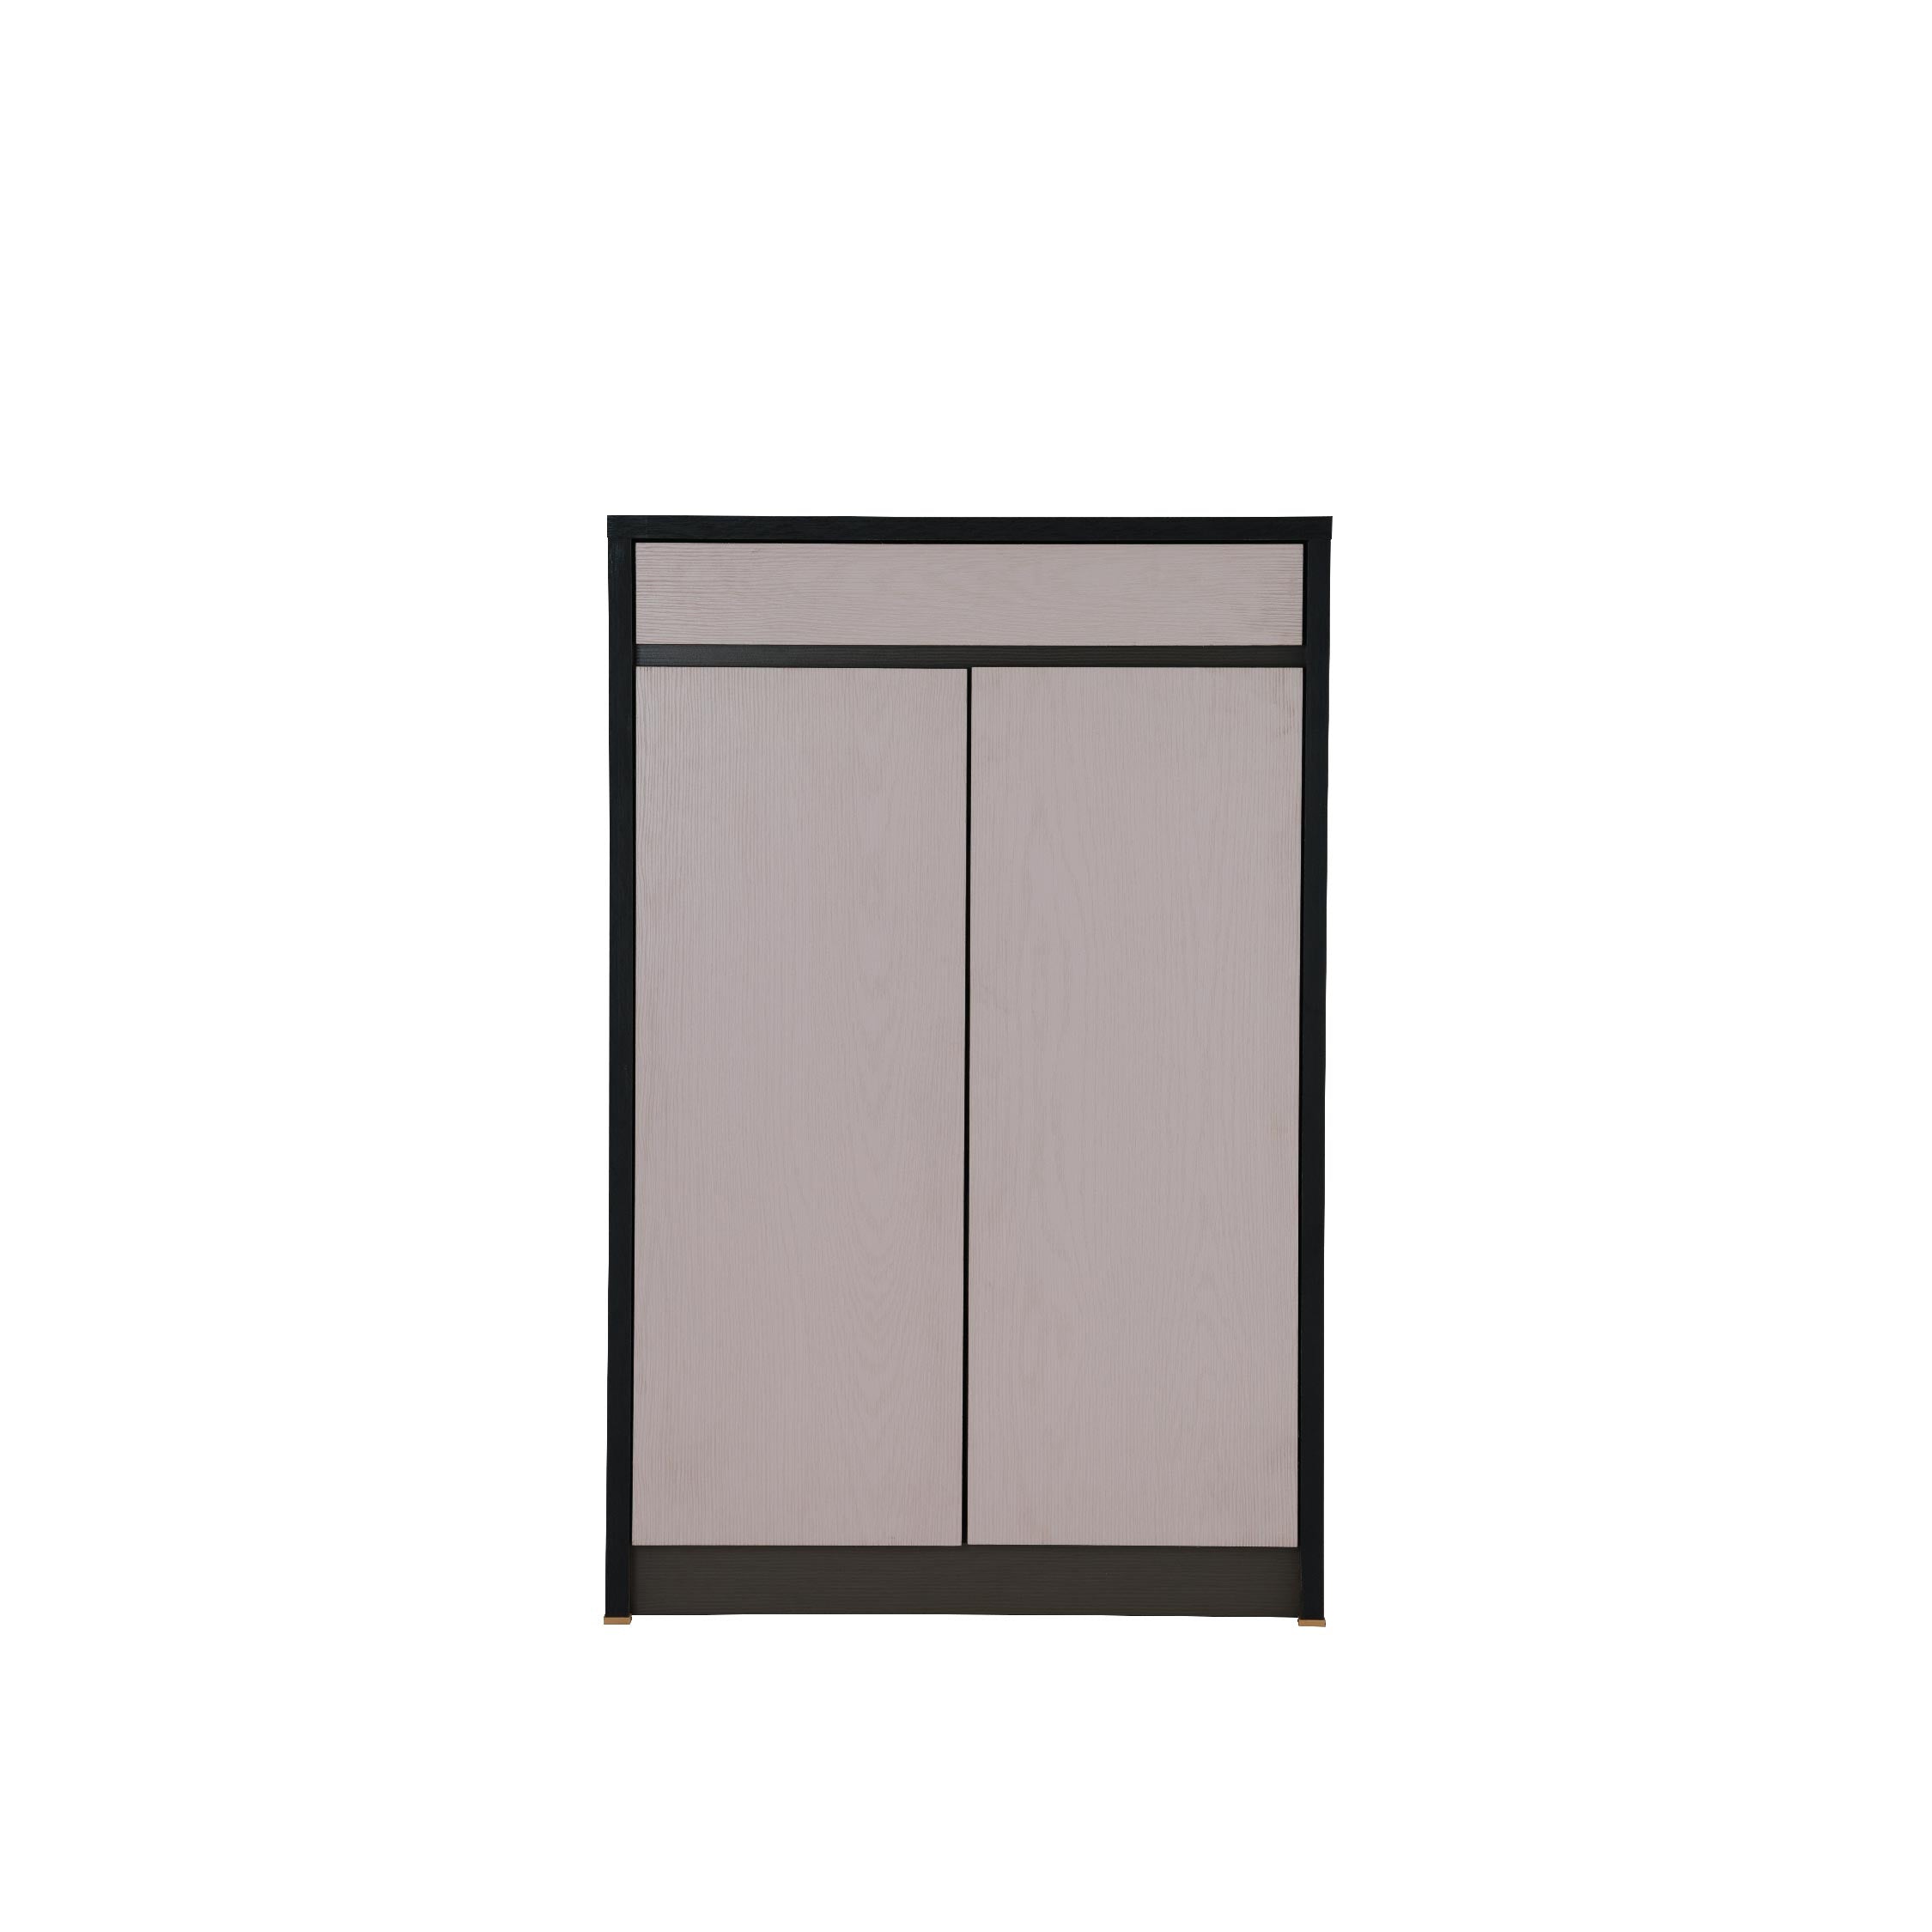 BASIC Shoe Cabinet 2 Door